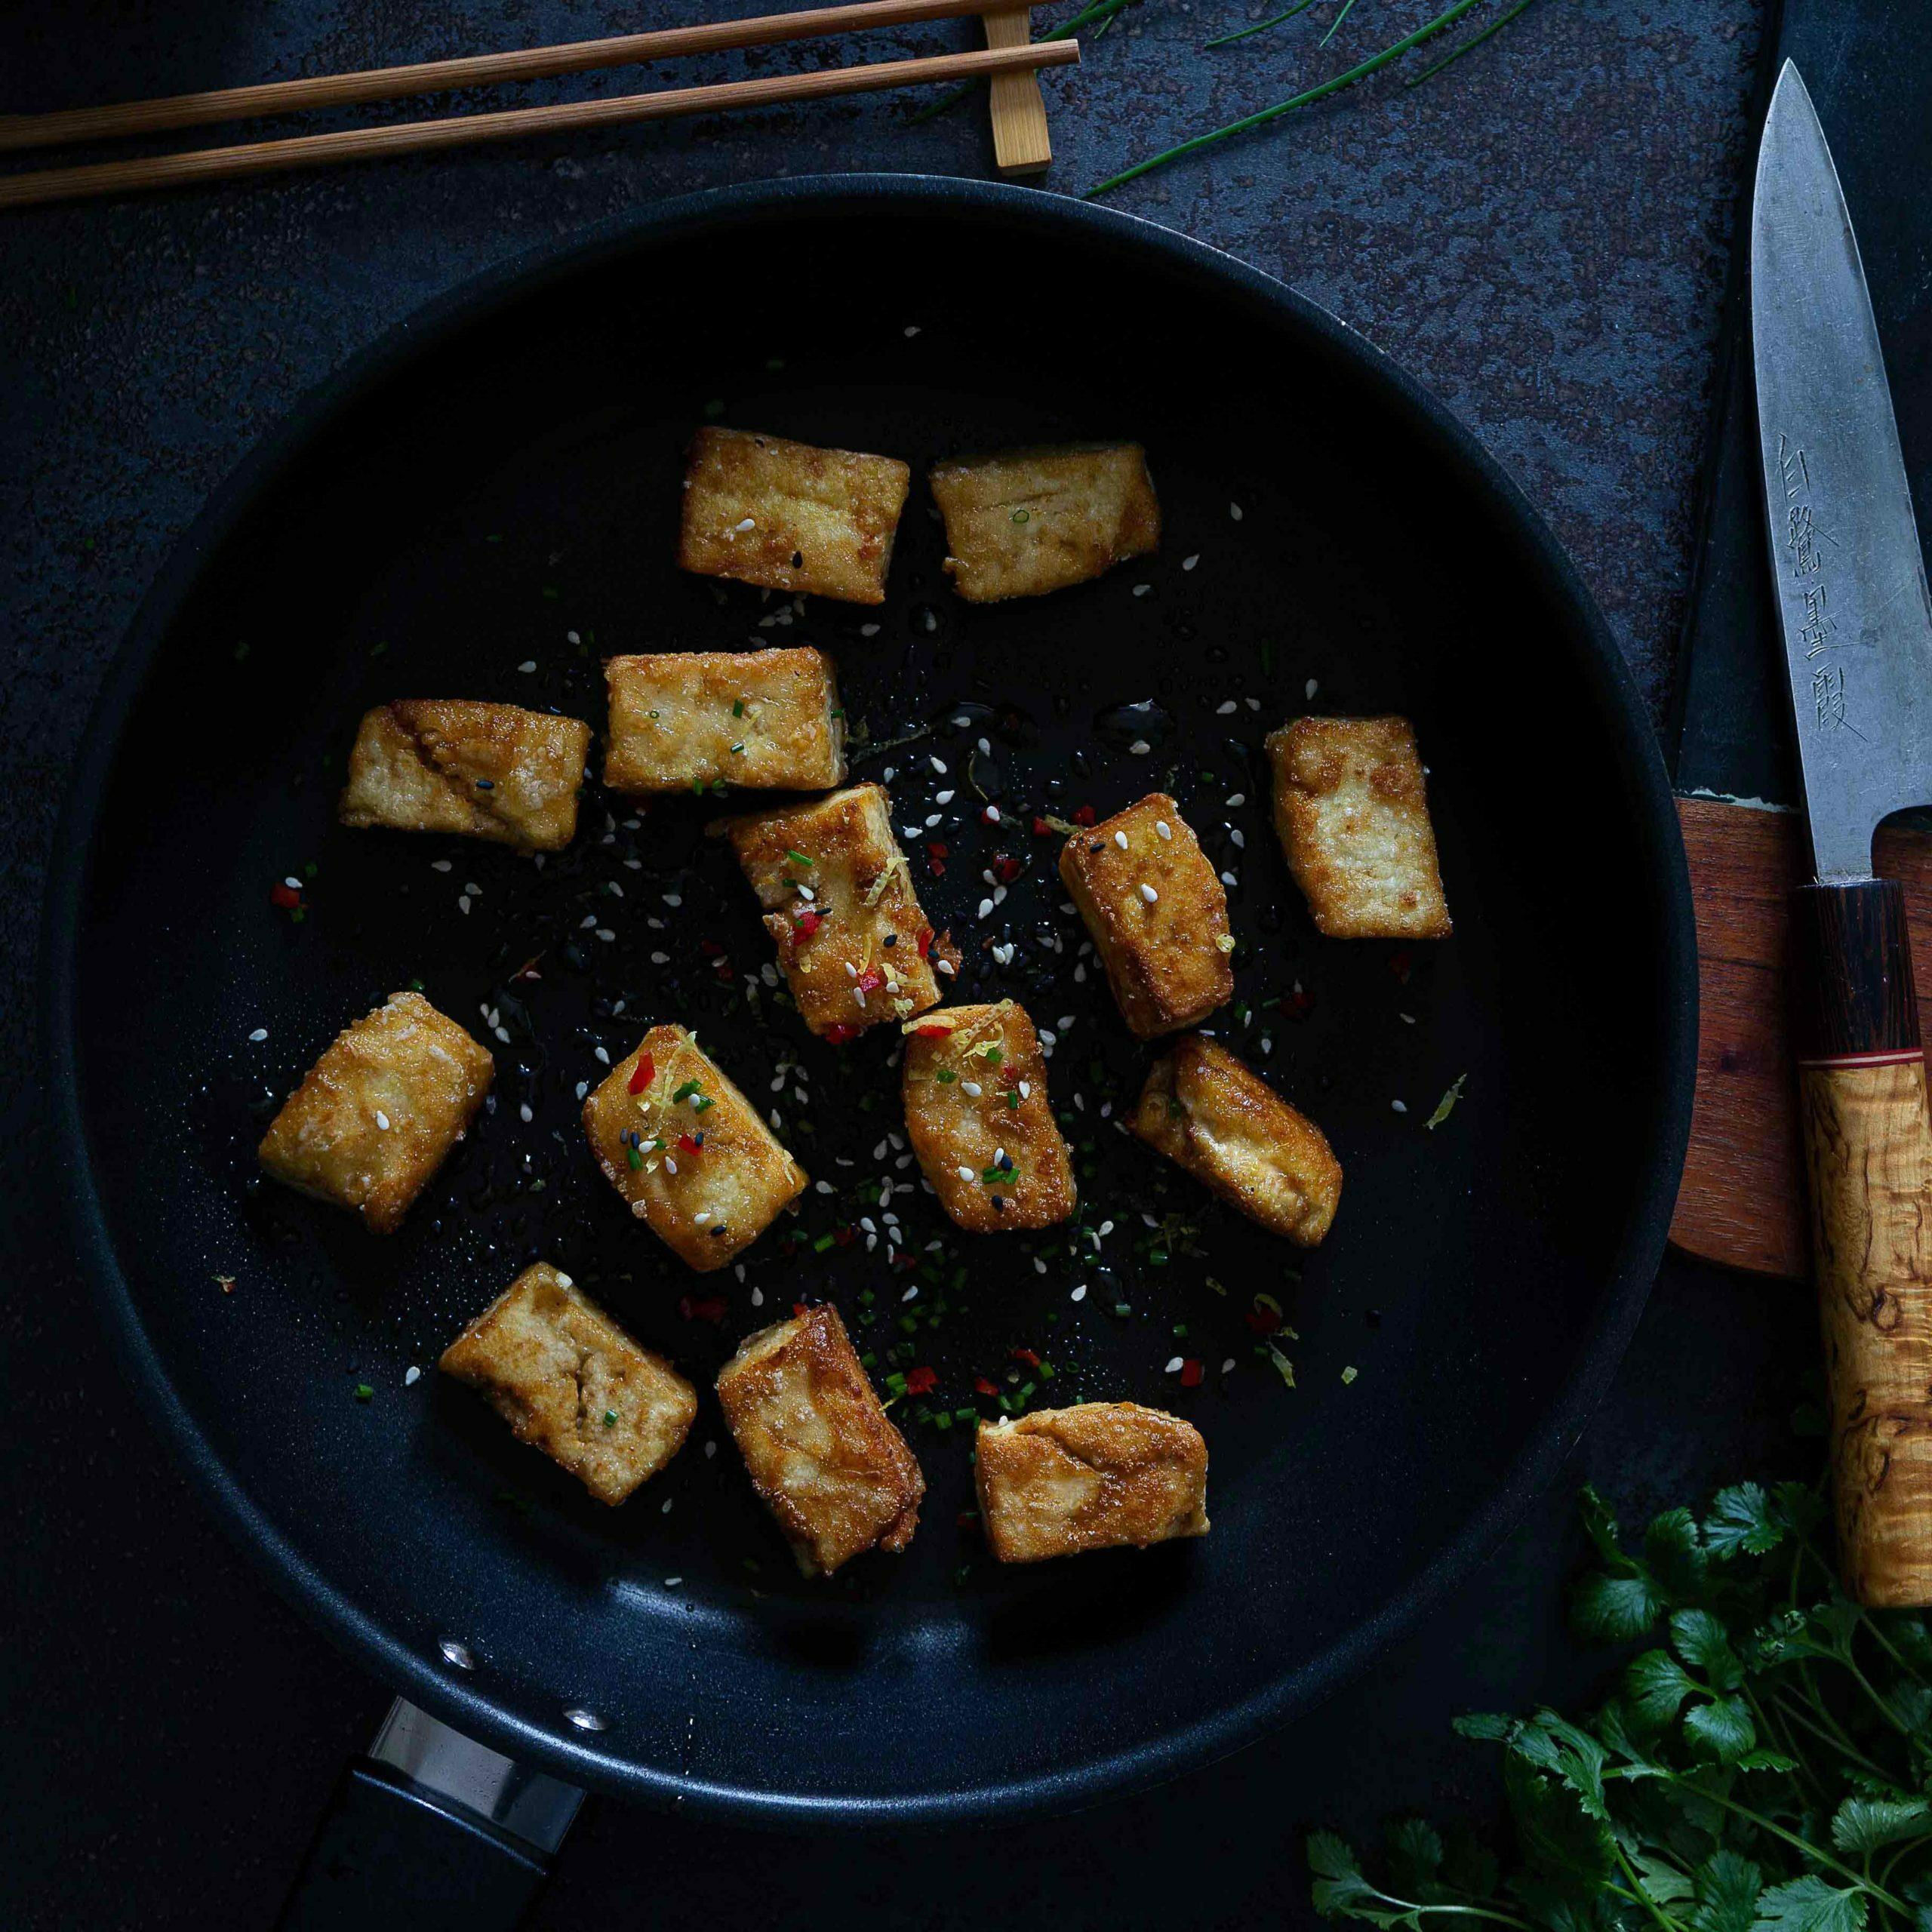 Tofun marinointi ja paistaminen rapeaksi.